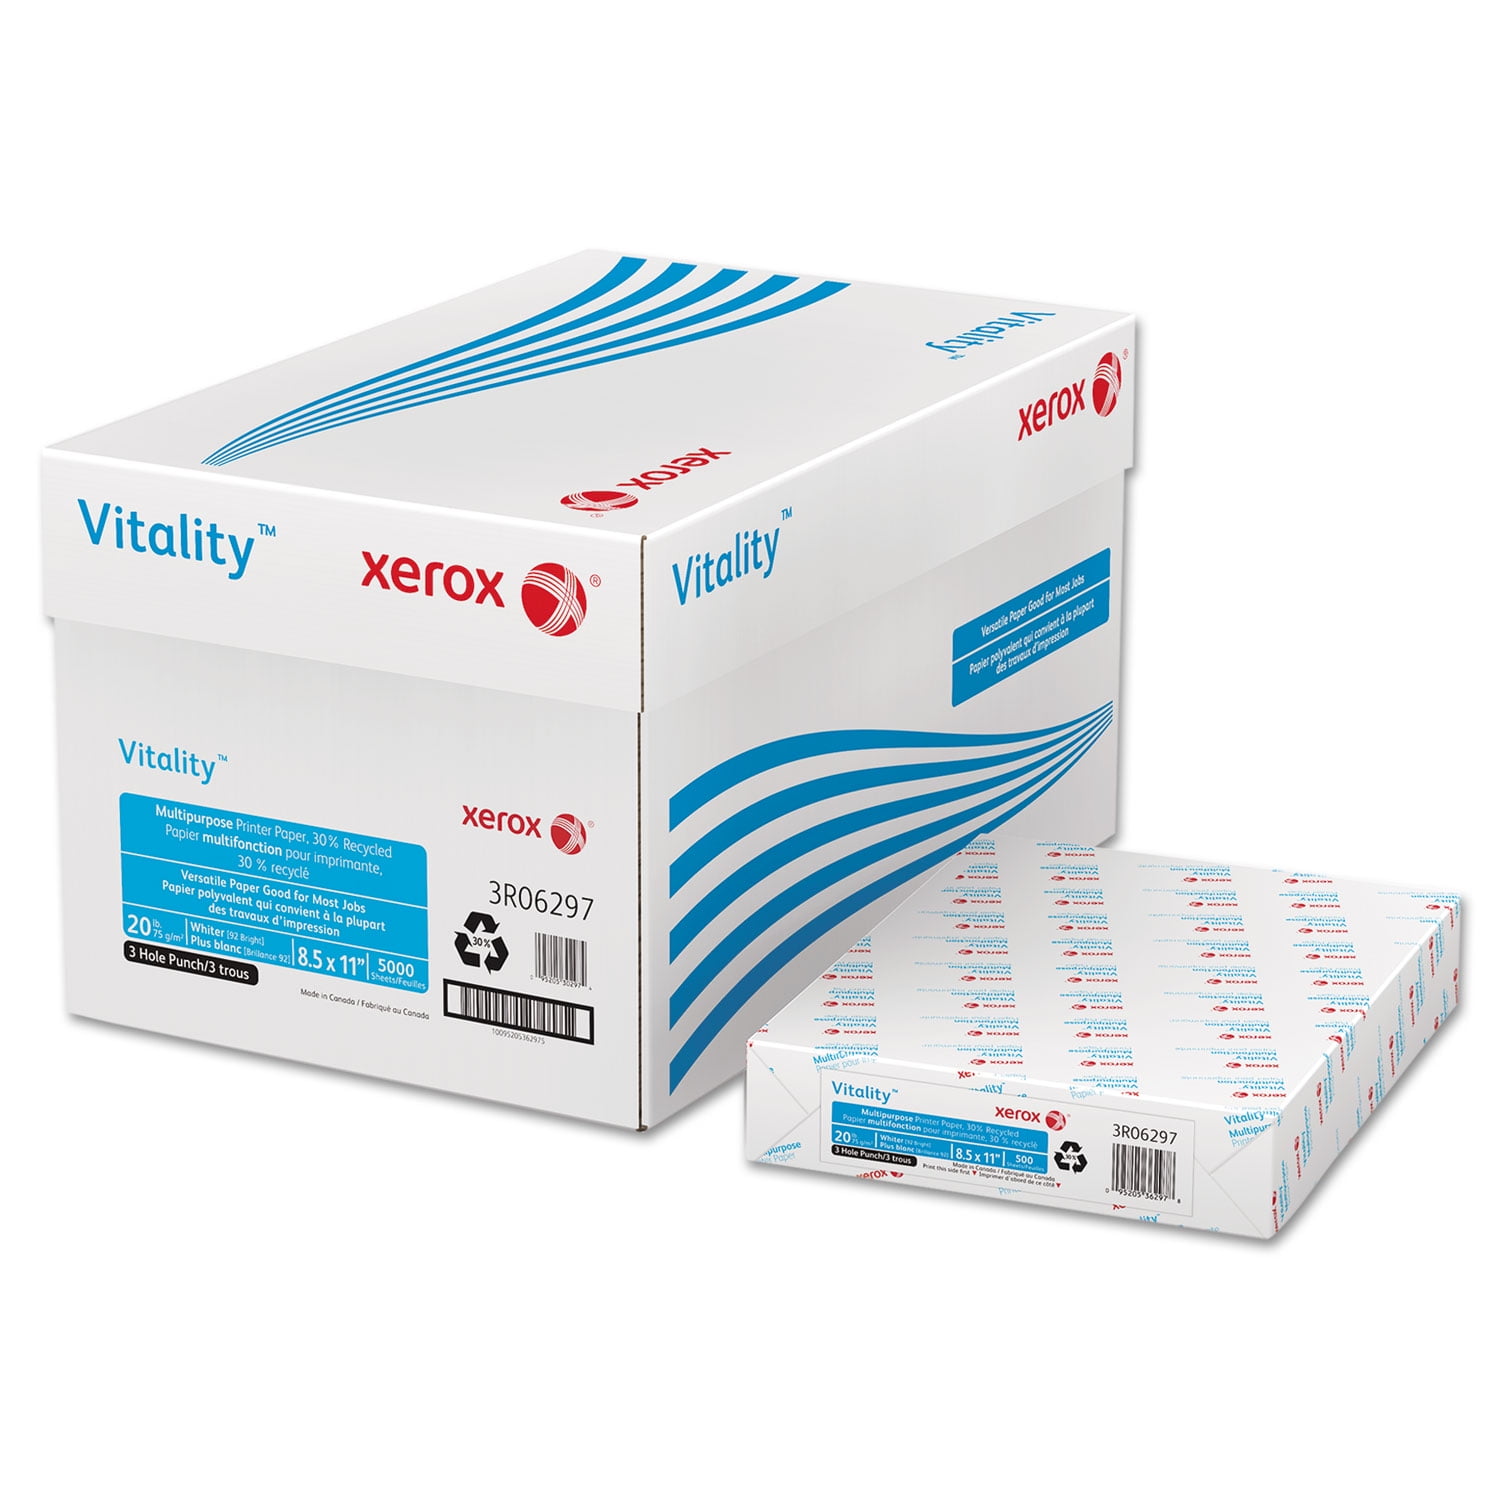 XEROX Vitality 30% Recycled Multipurpose Printer Paper 8 1/2 x 11 White 500 